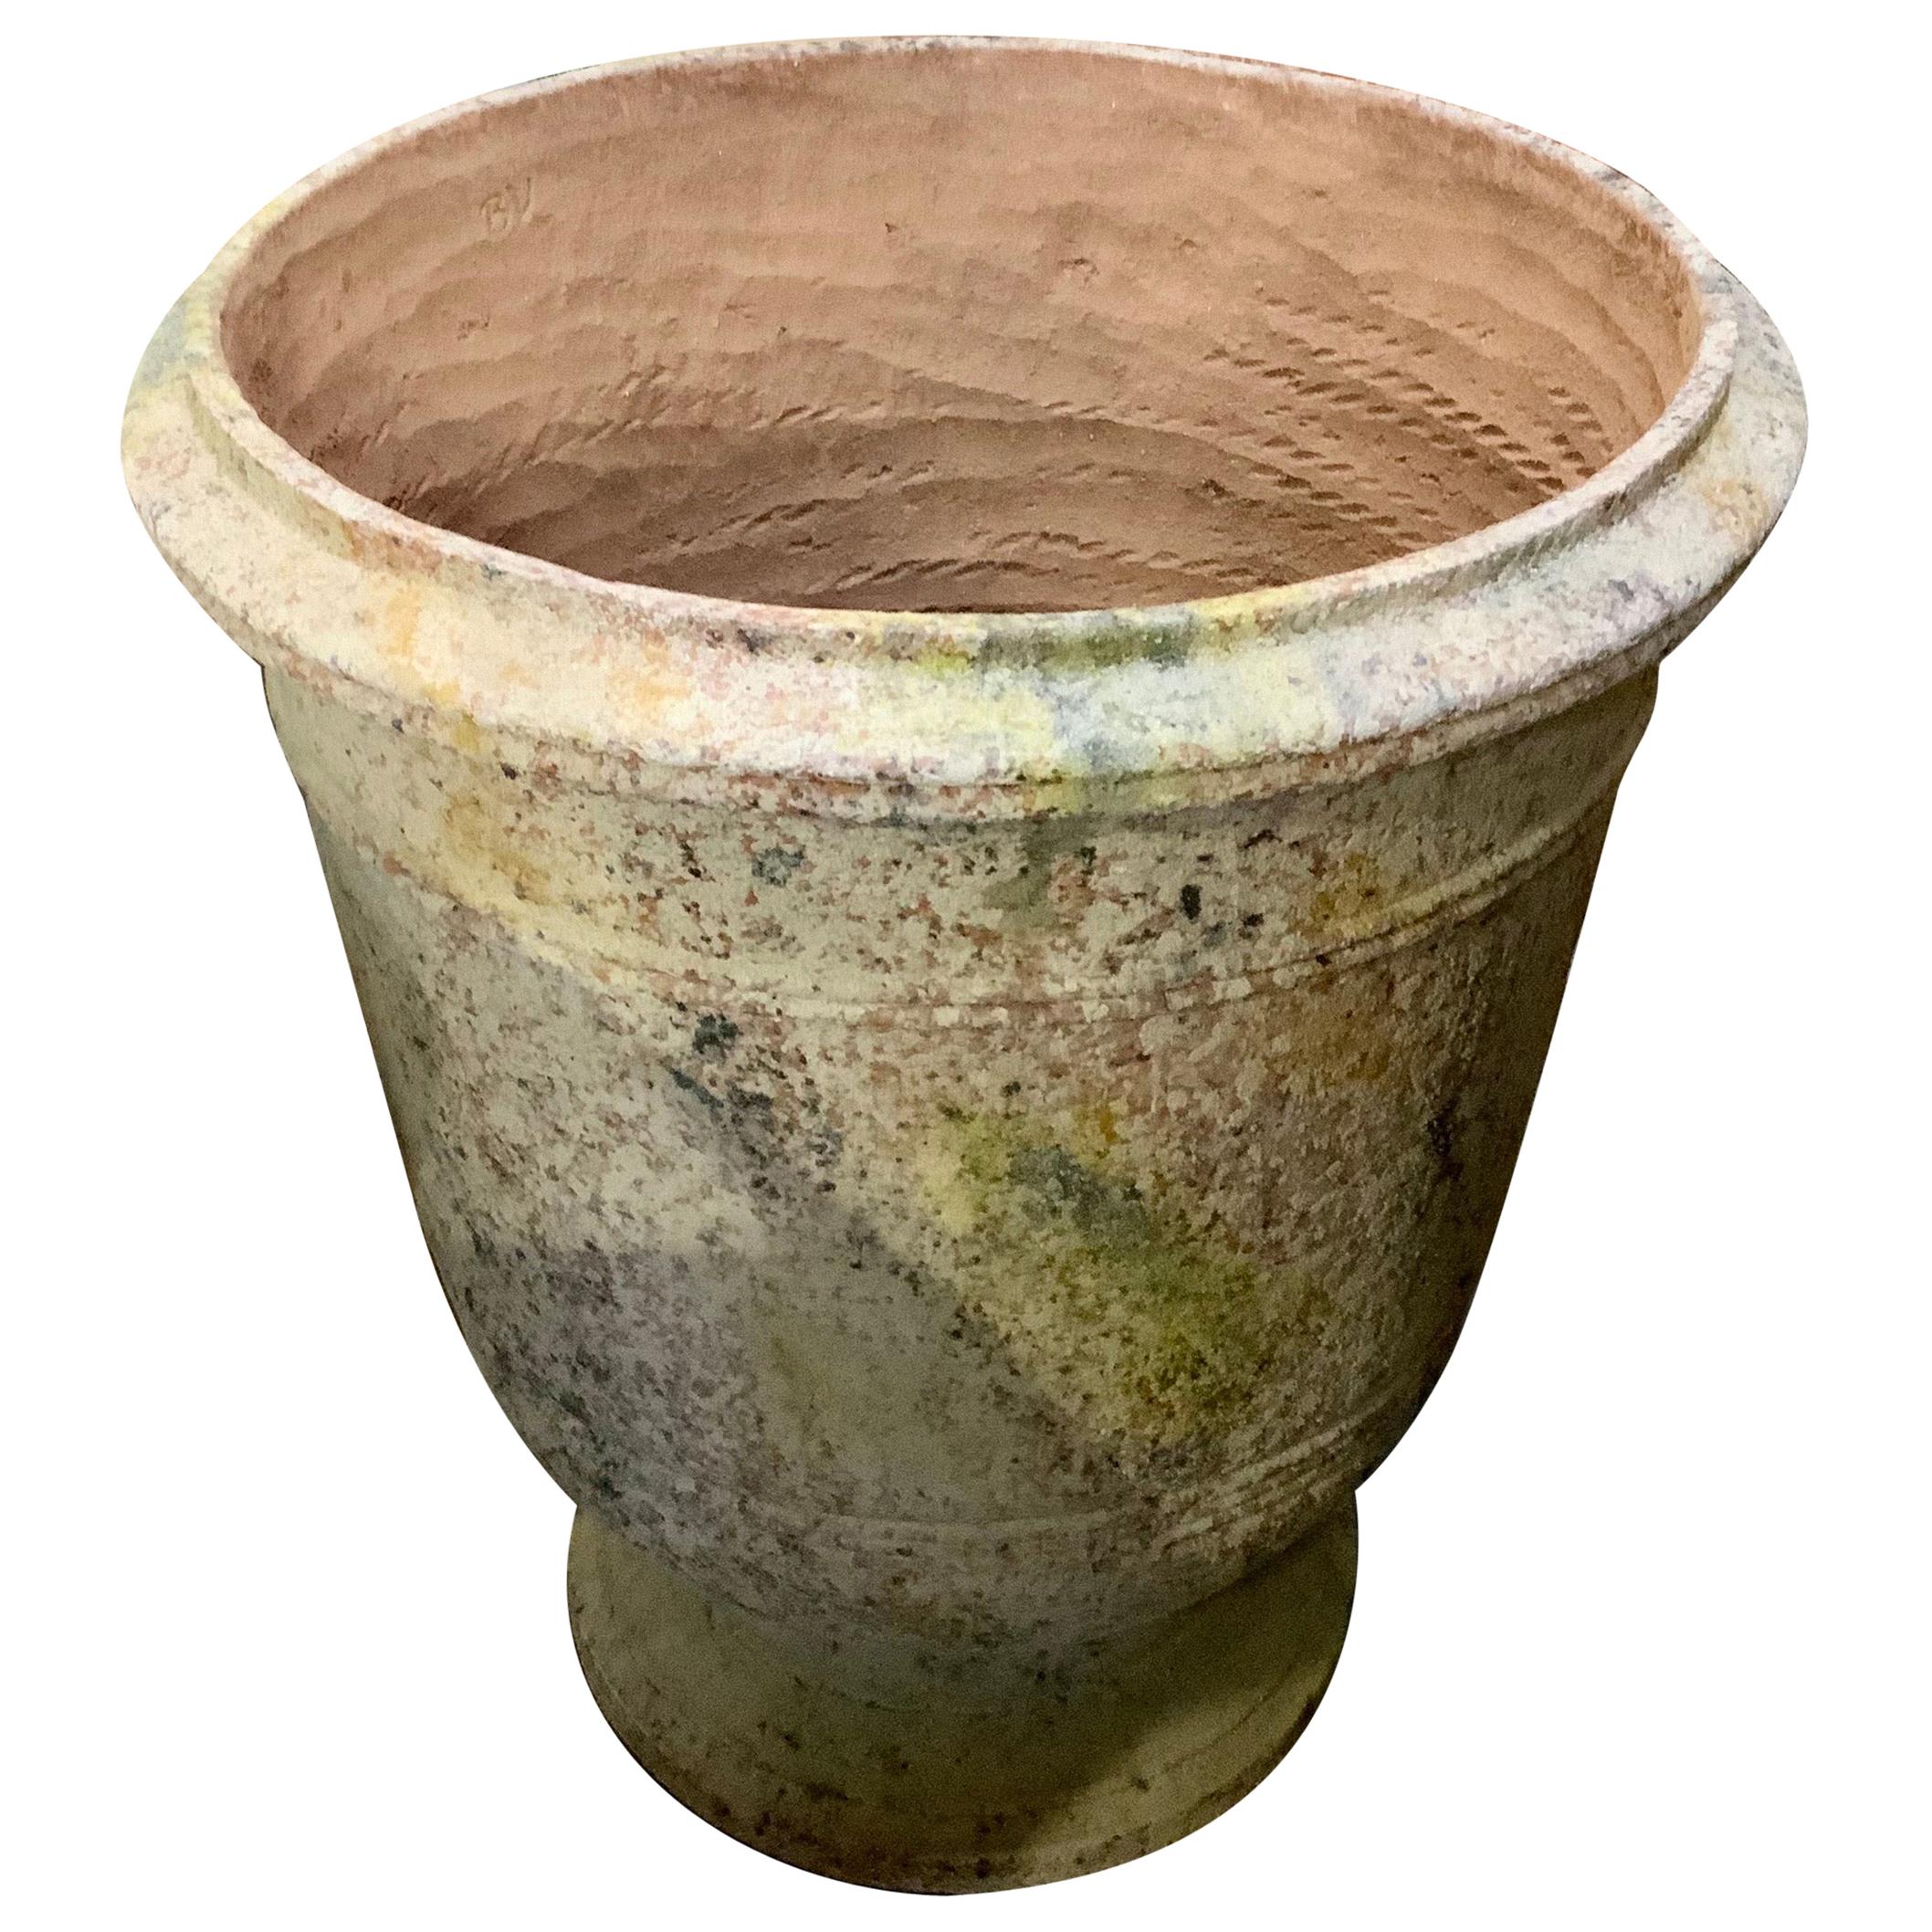 Handmade Terracotta Urn from Provence